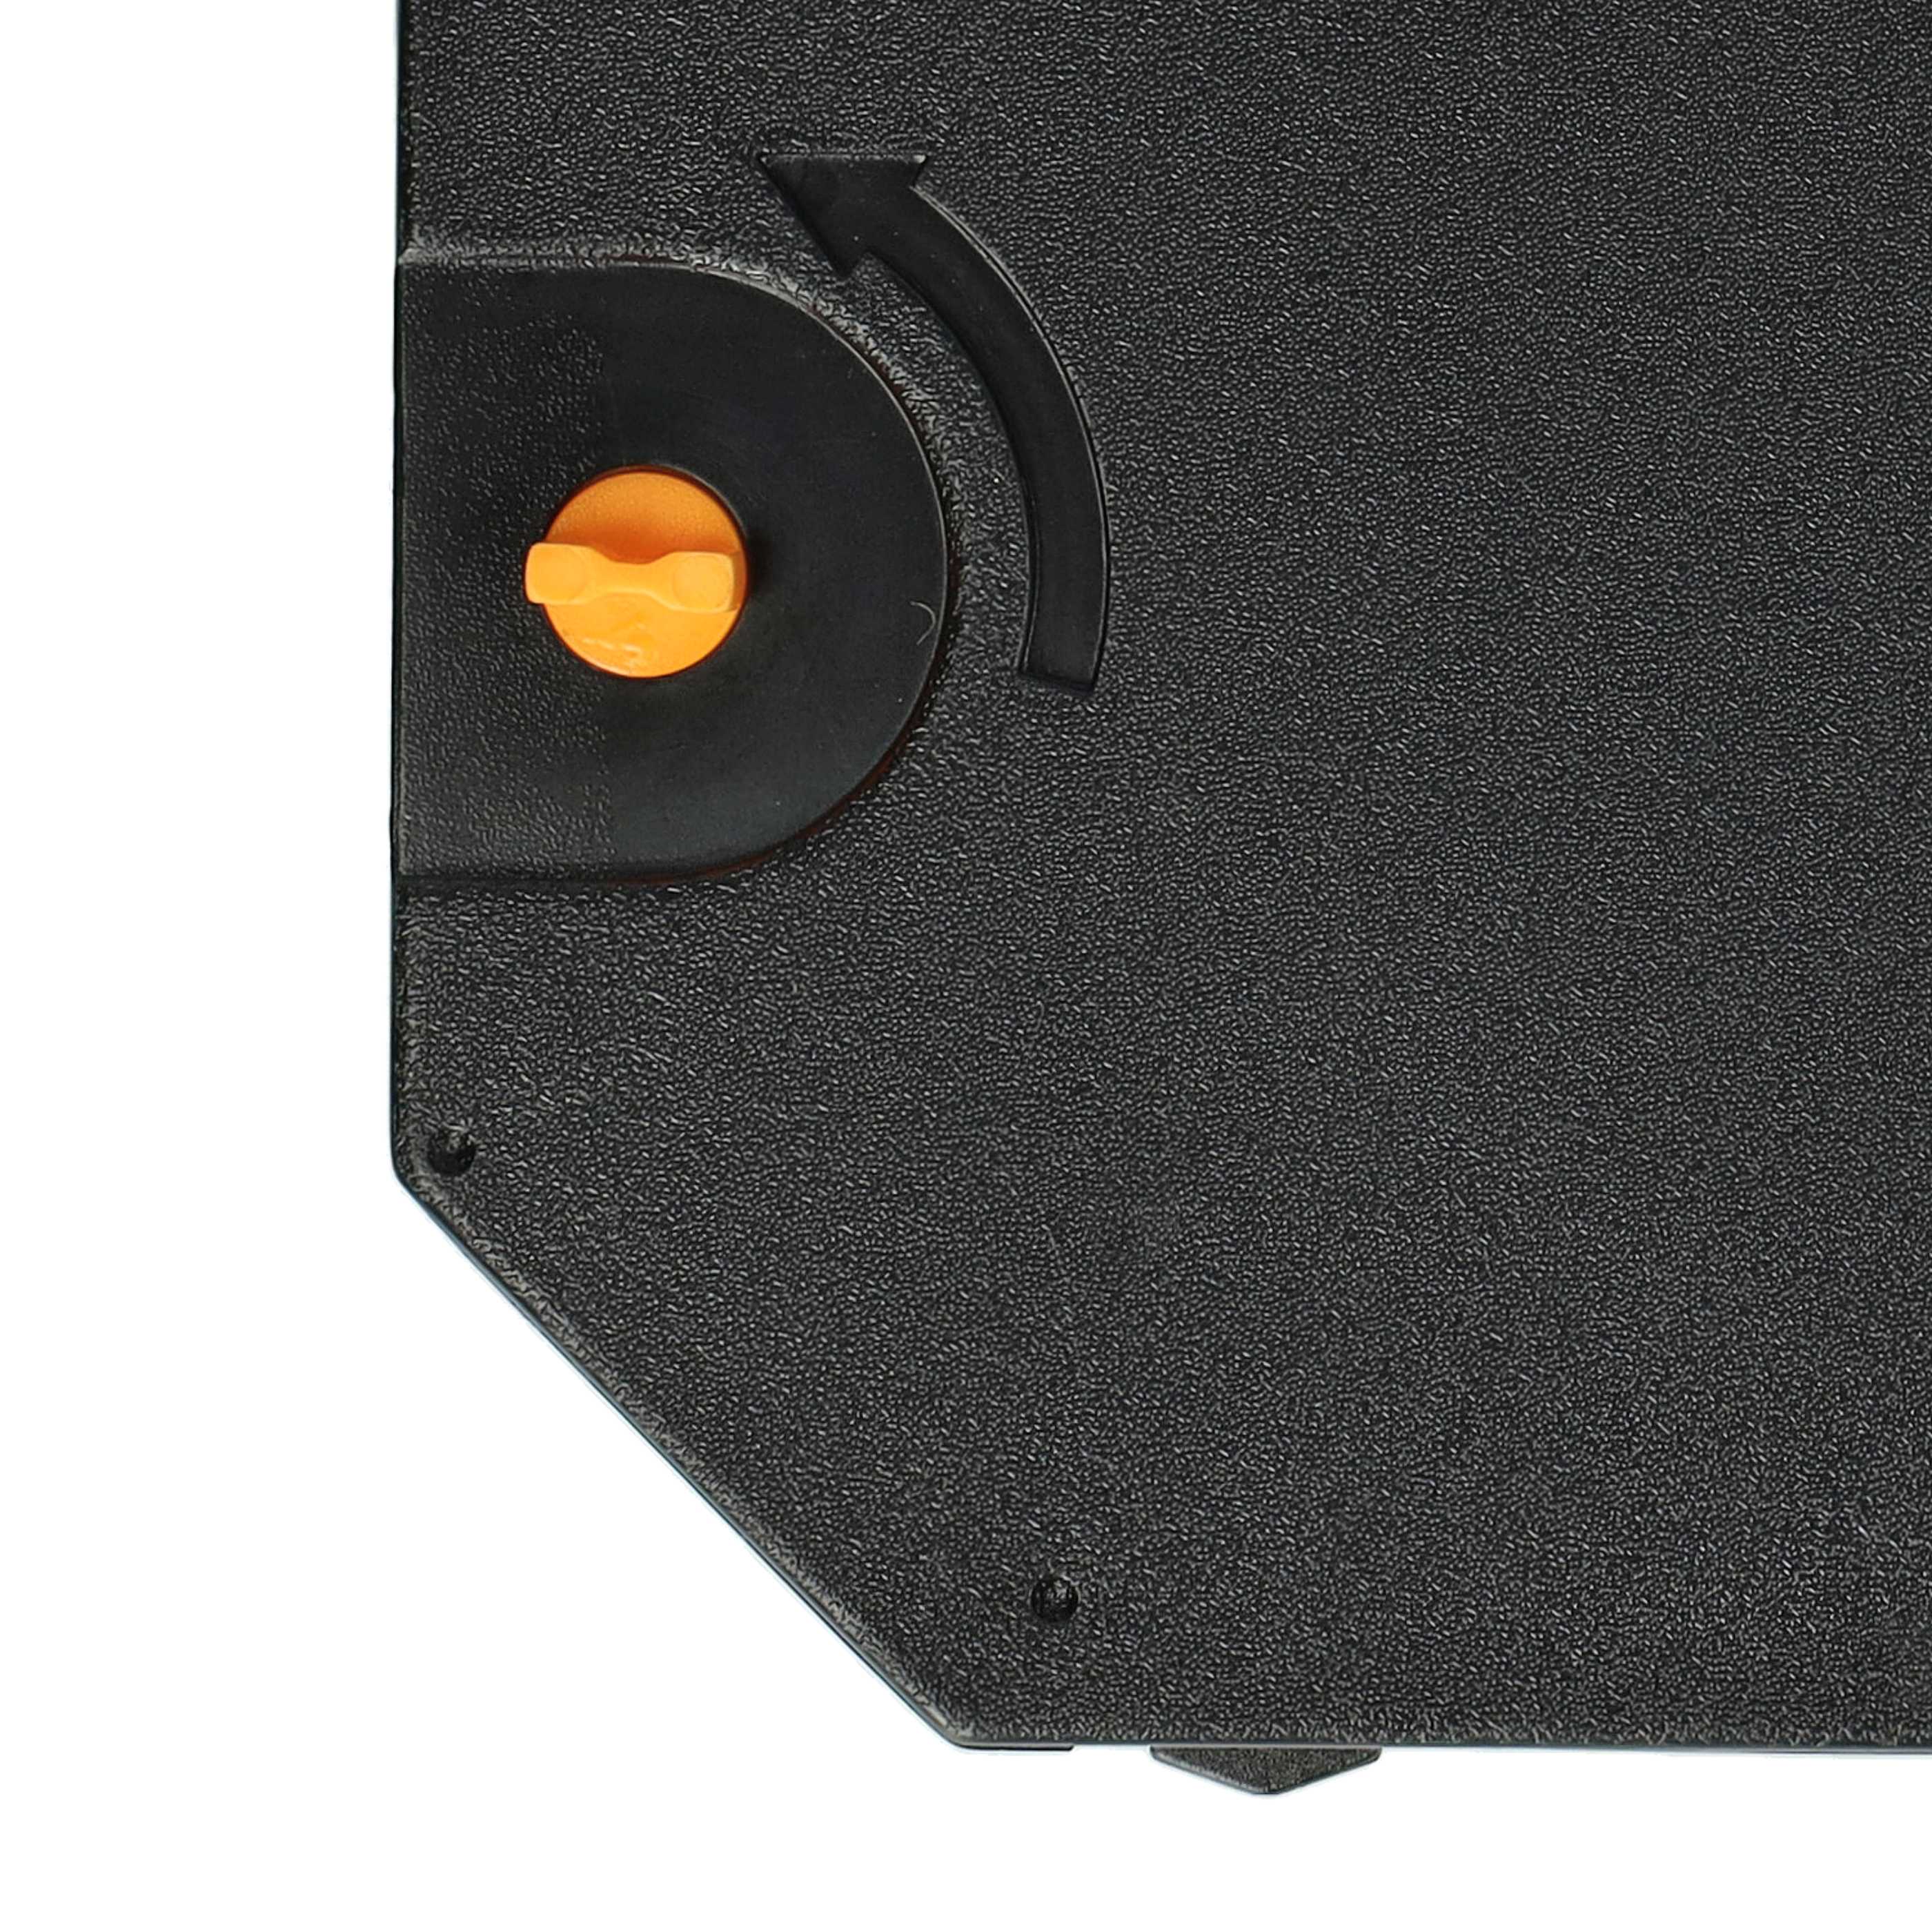 Ruban encreur remplace 186c1, F018602 pour imprimante matricielle / étiquette - Carbone, noir